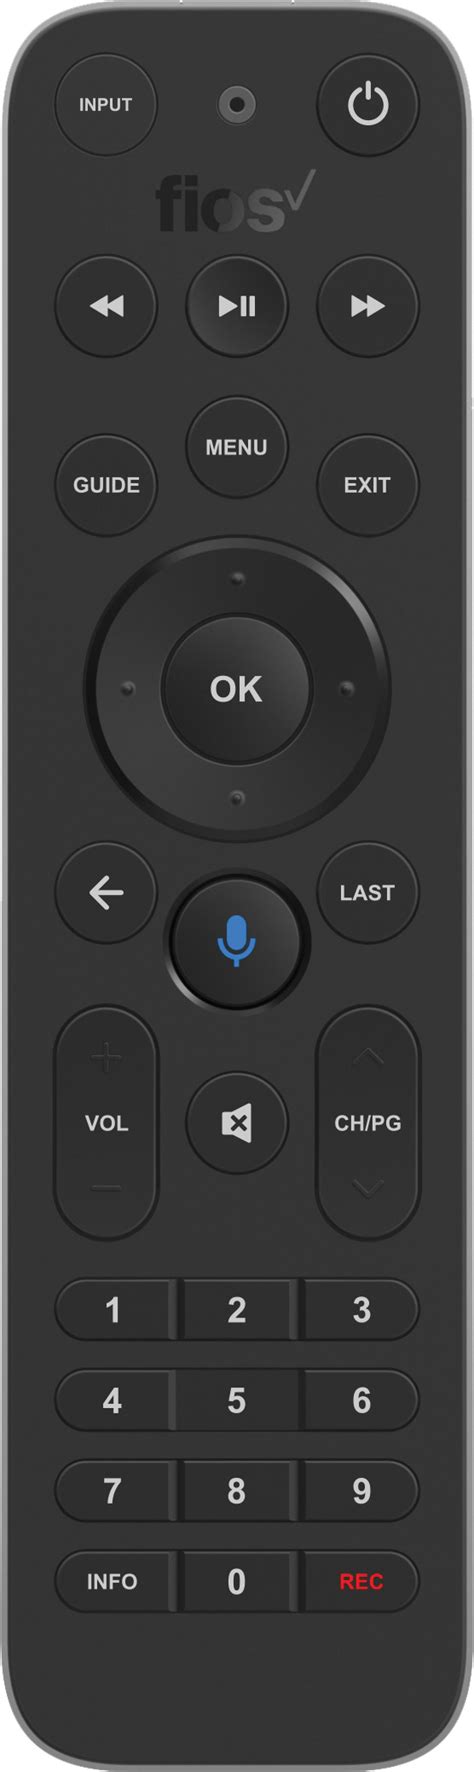 Program your remote using the Auto-Search fu